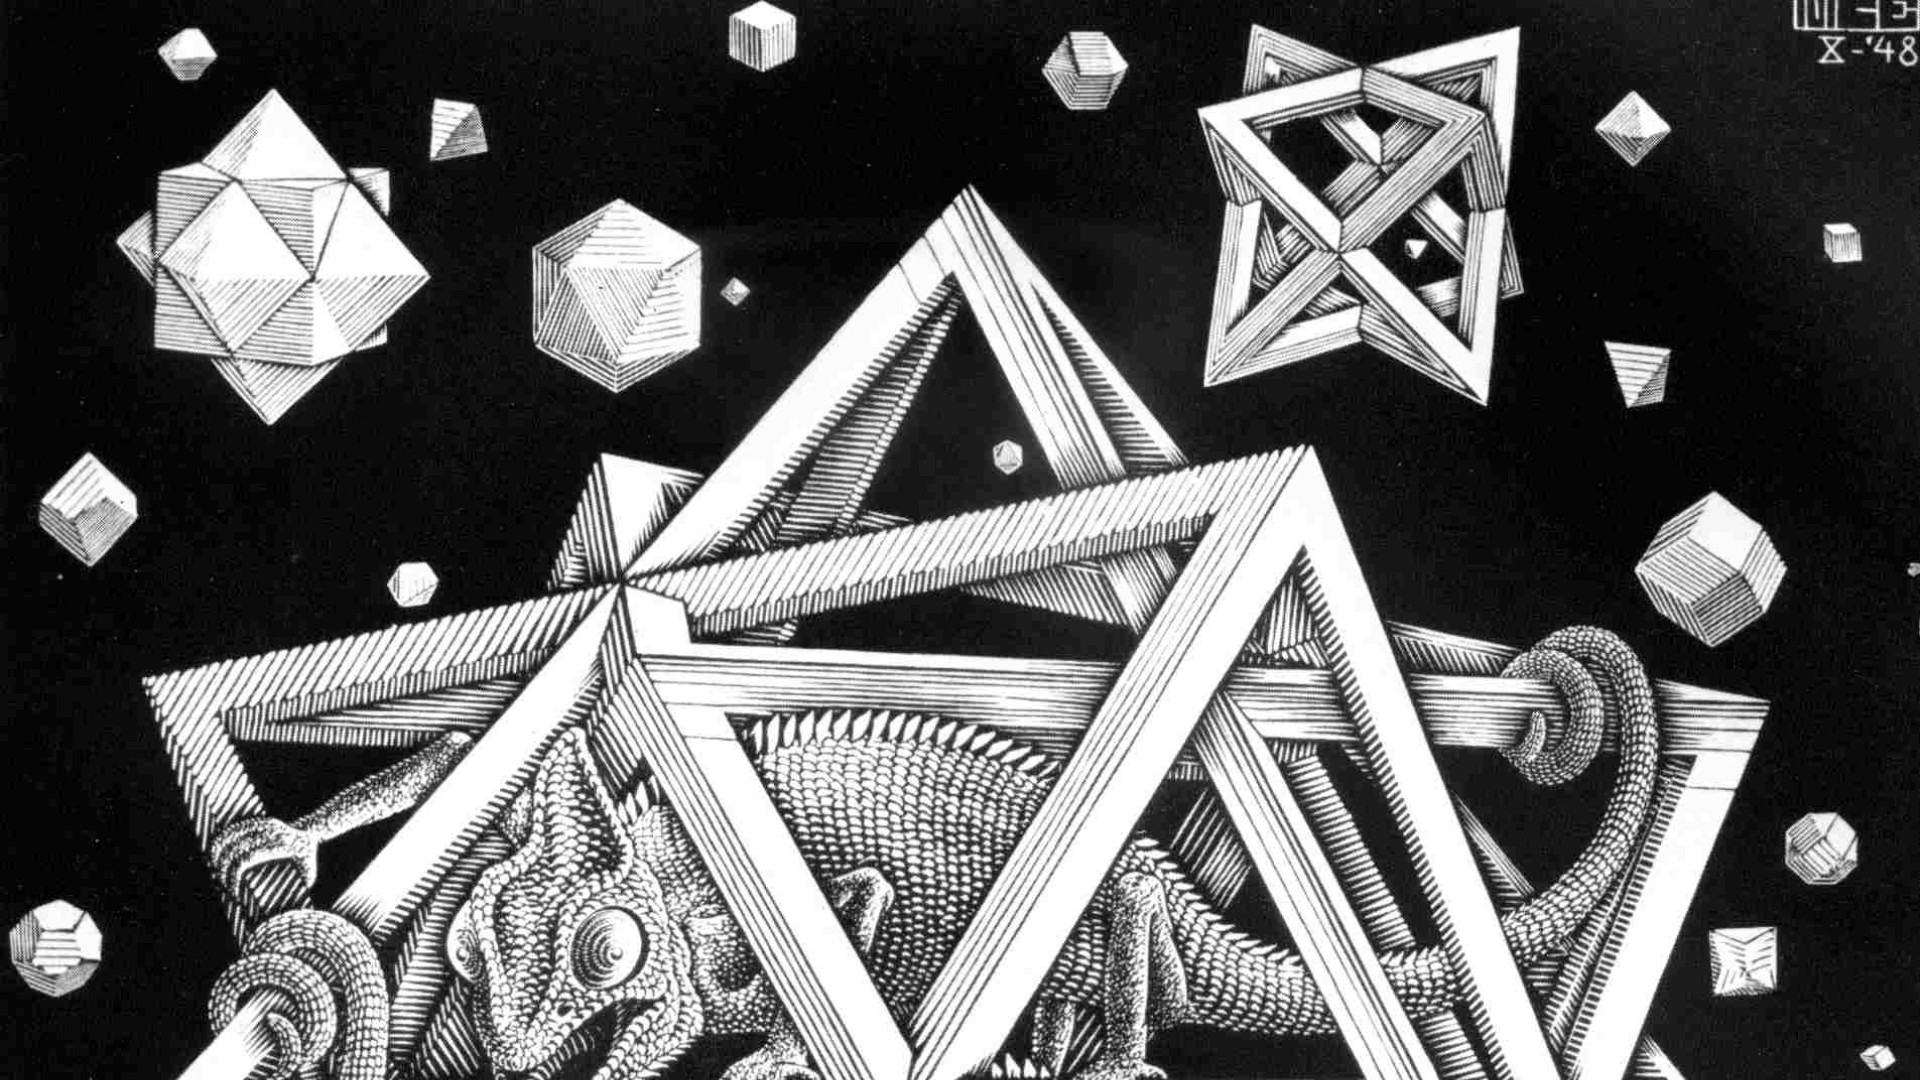 1920x1080 M.C. Escher Wallpaper Downloads | escher 3D and CG & Abstract